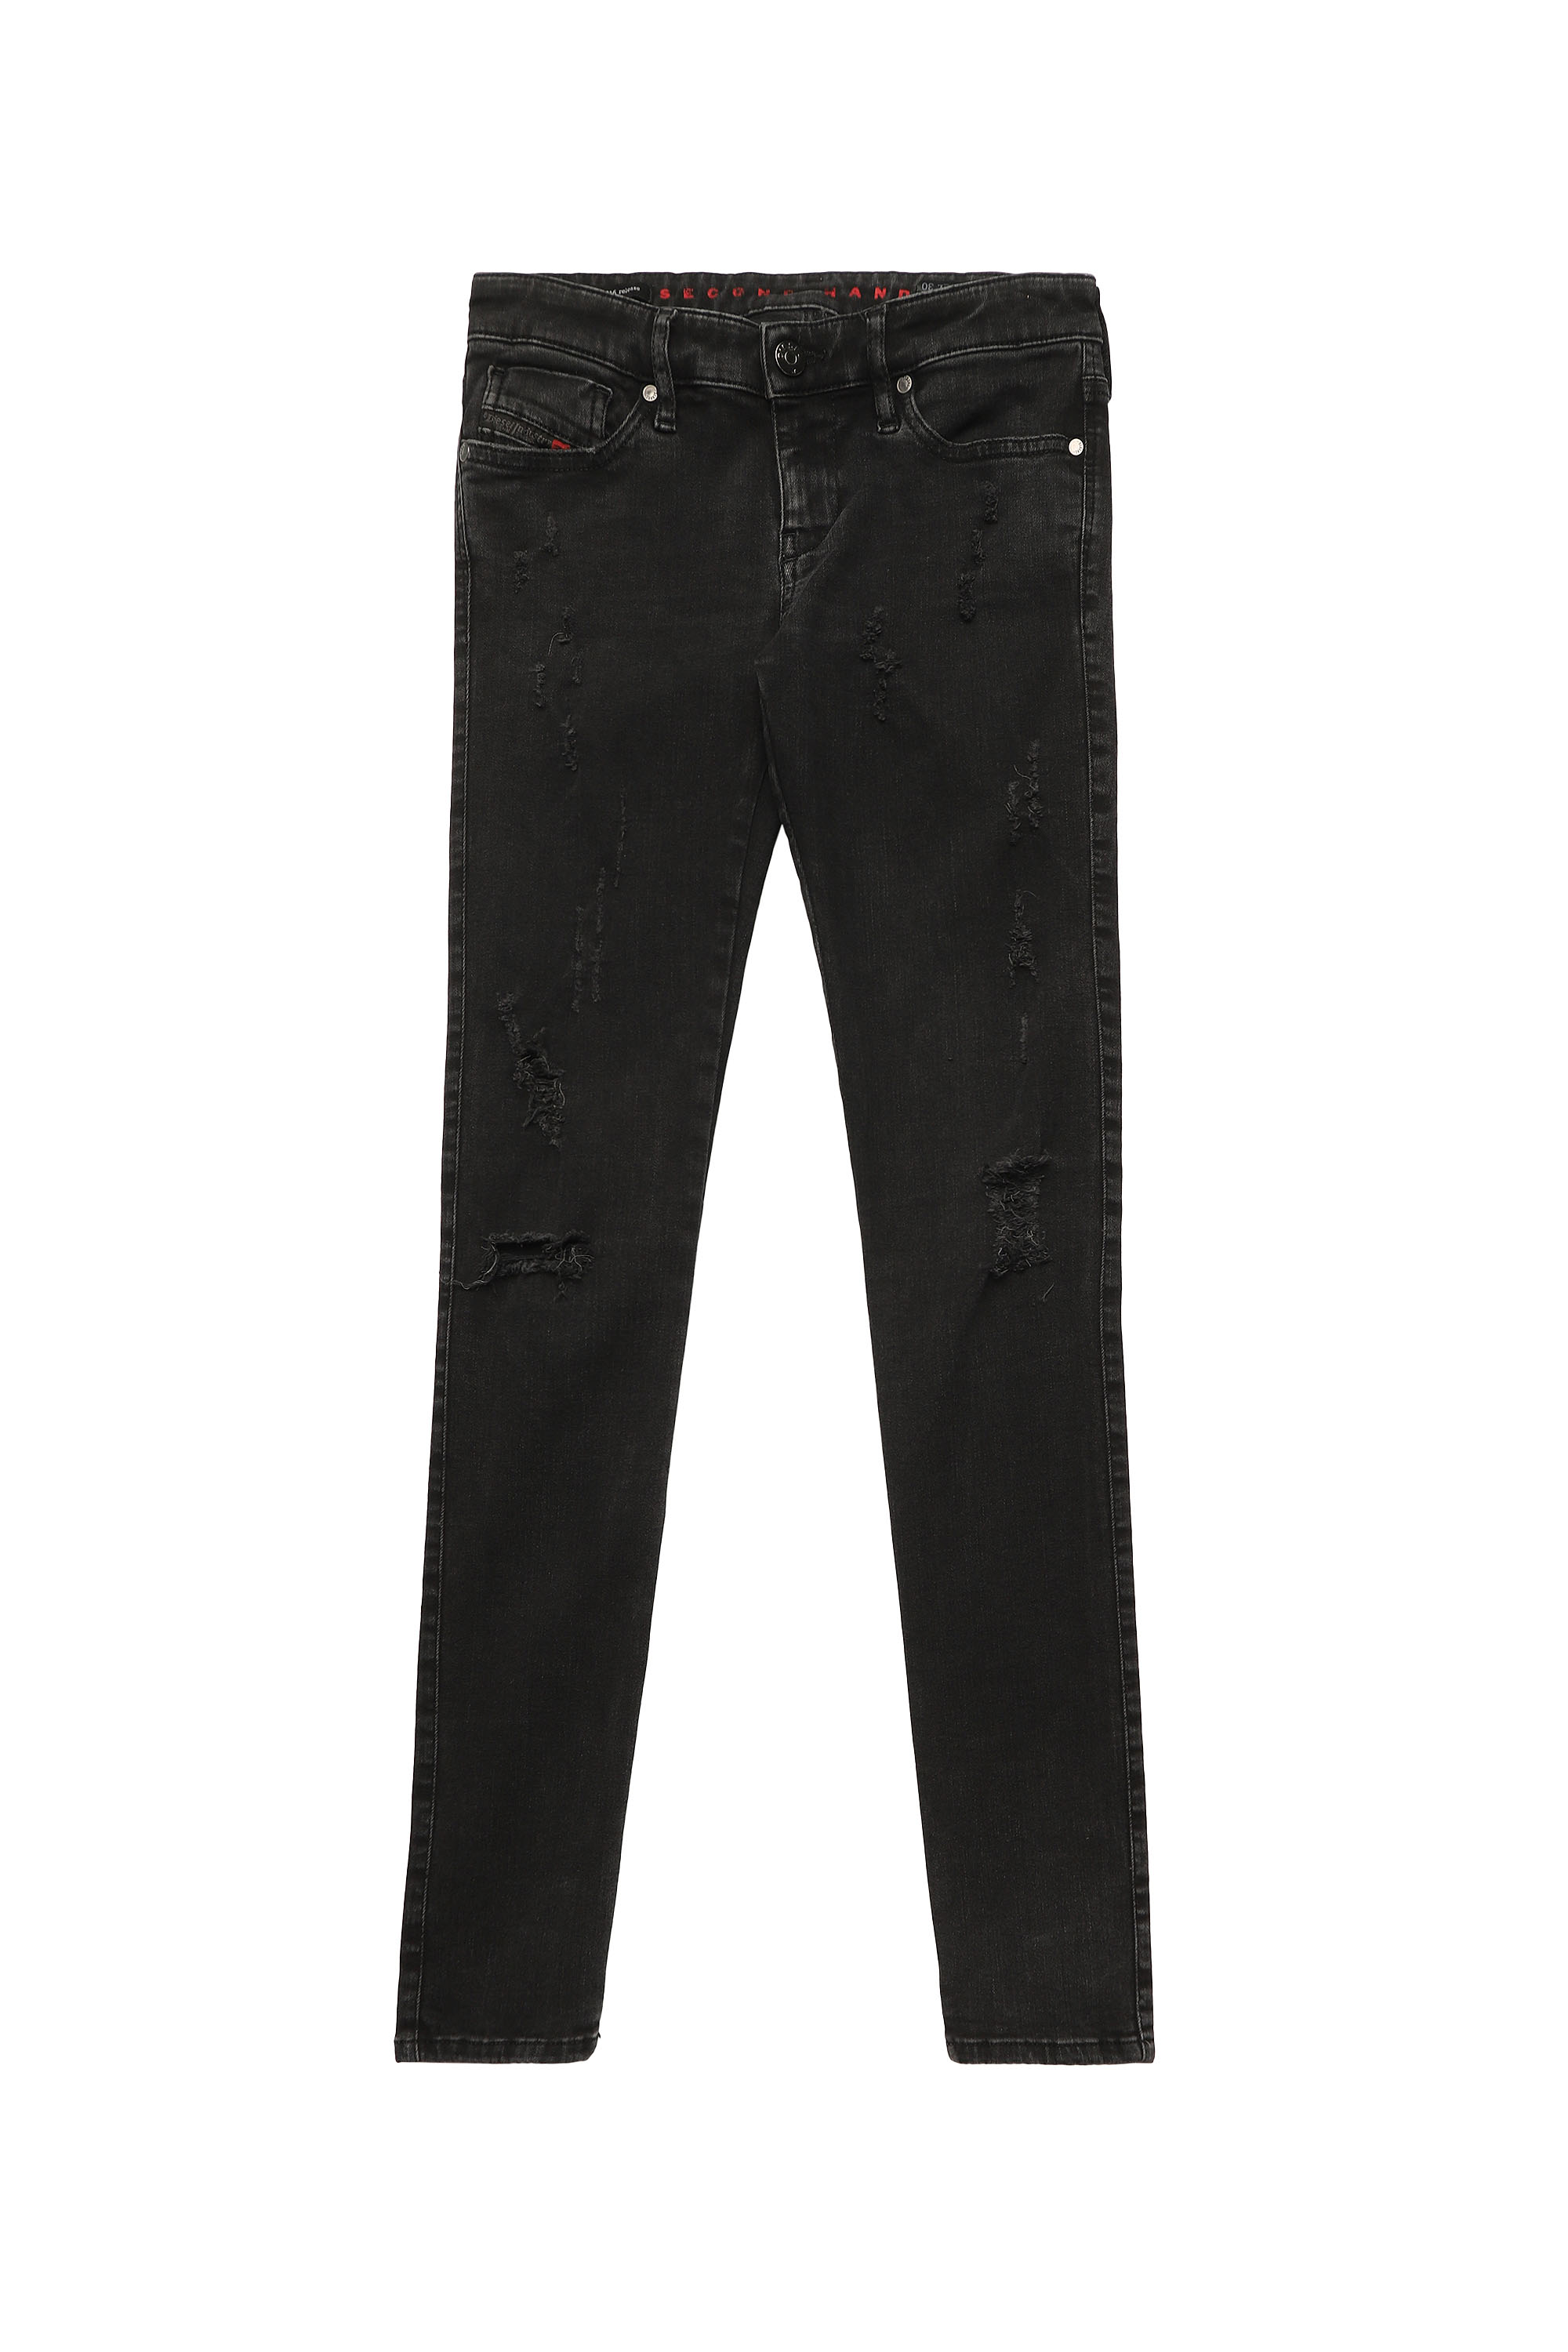 SKINZEE-LOW, Black/Dark grey - Jeans